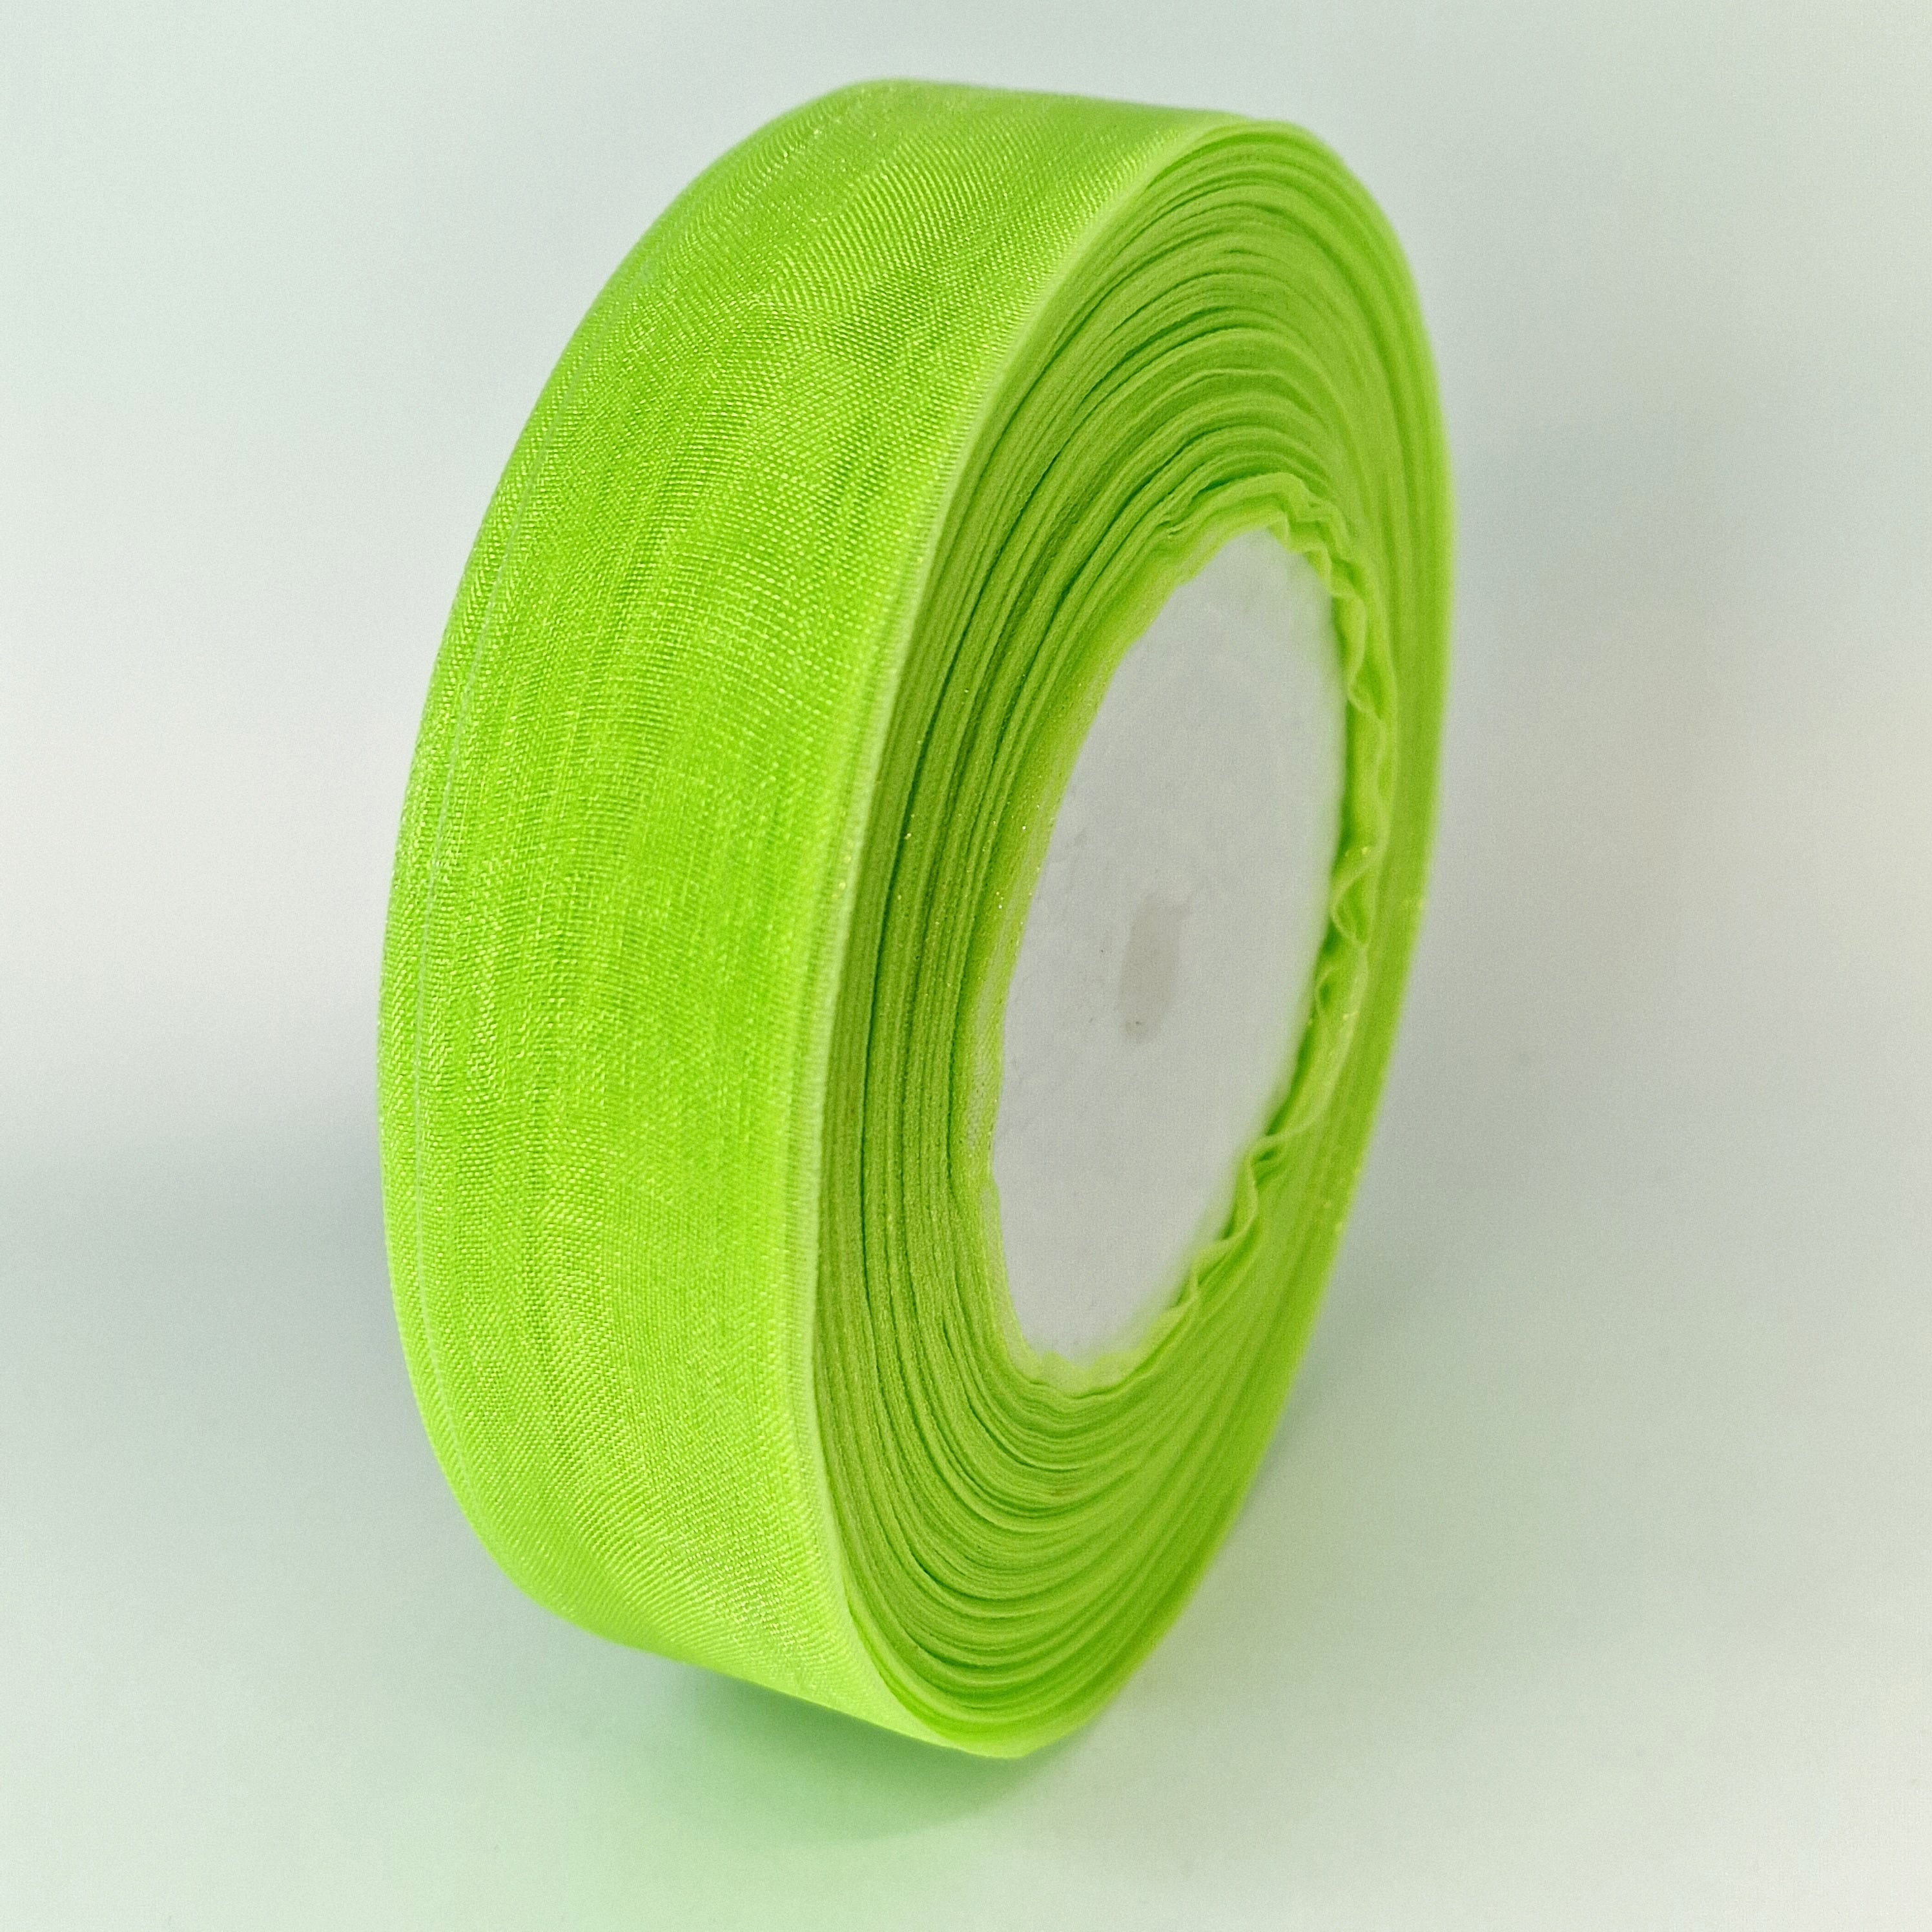 MajorCrafts 25mm 45metres Bright Green Sheer Organza Fabric Ribbon Roll R1126